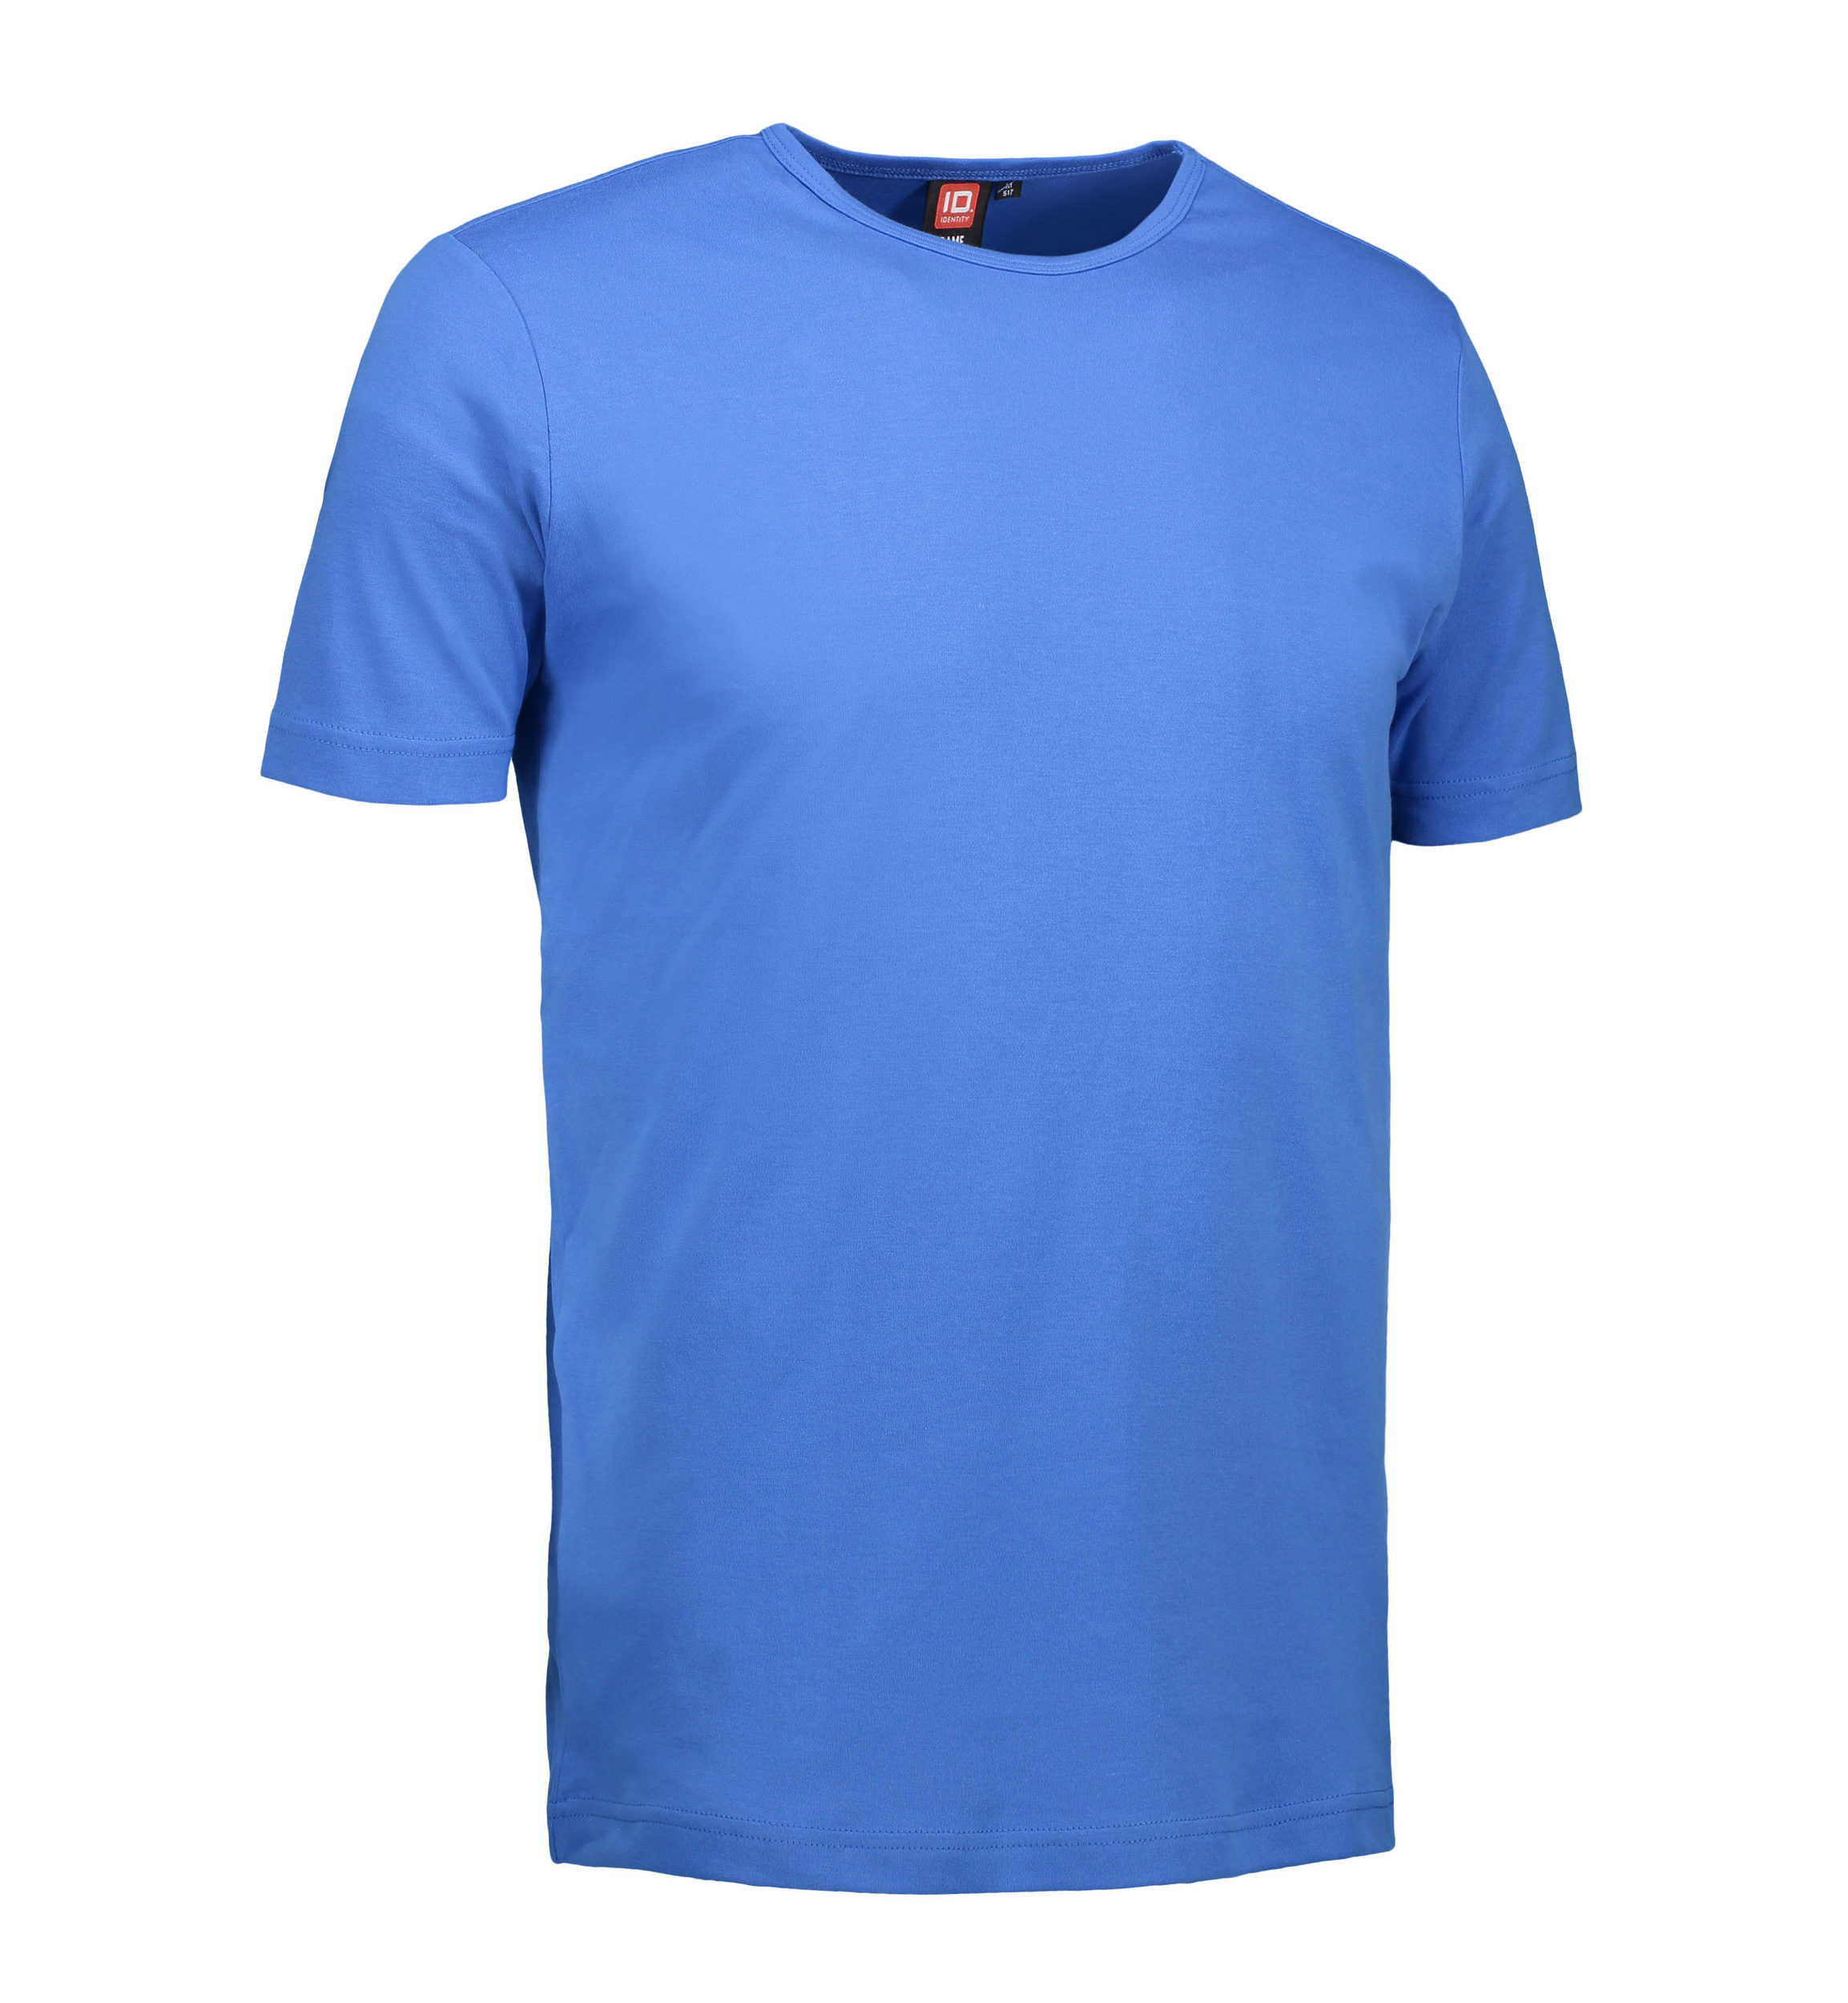 Billede af Blå t-shirt med rund hals til mænd - S hos Sygeplejebutikken.dk